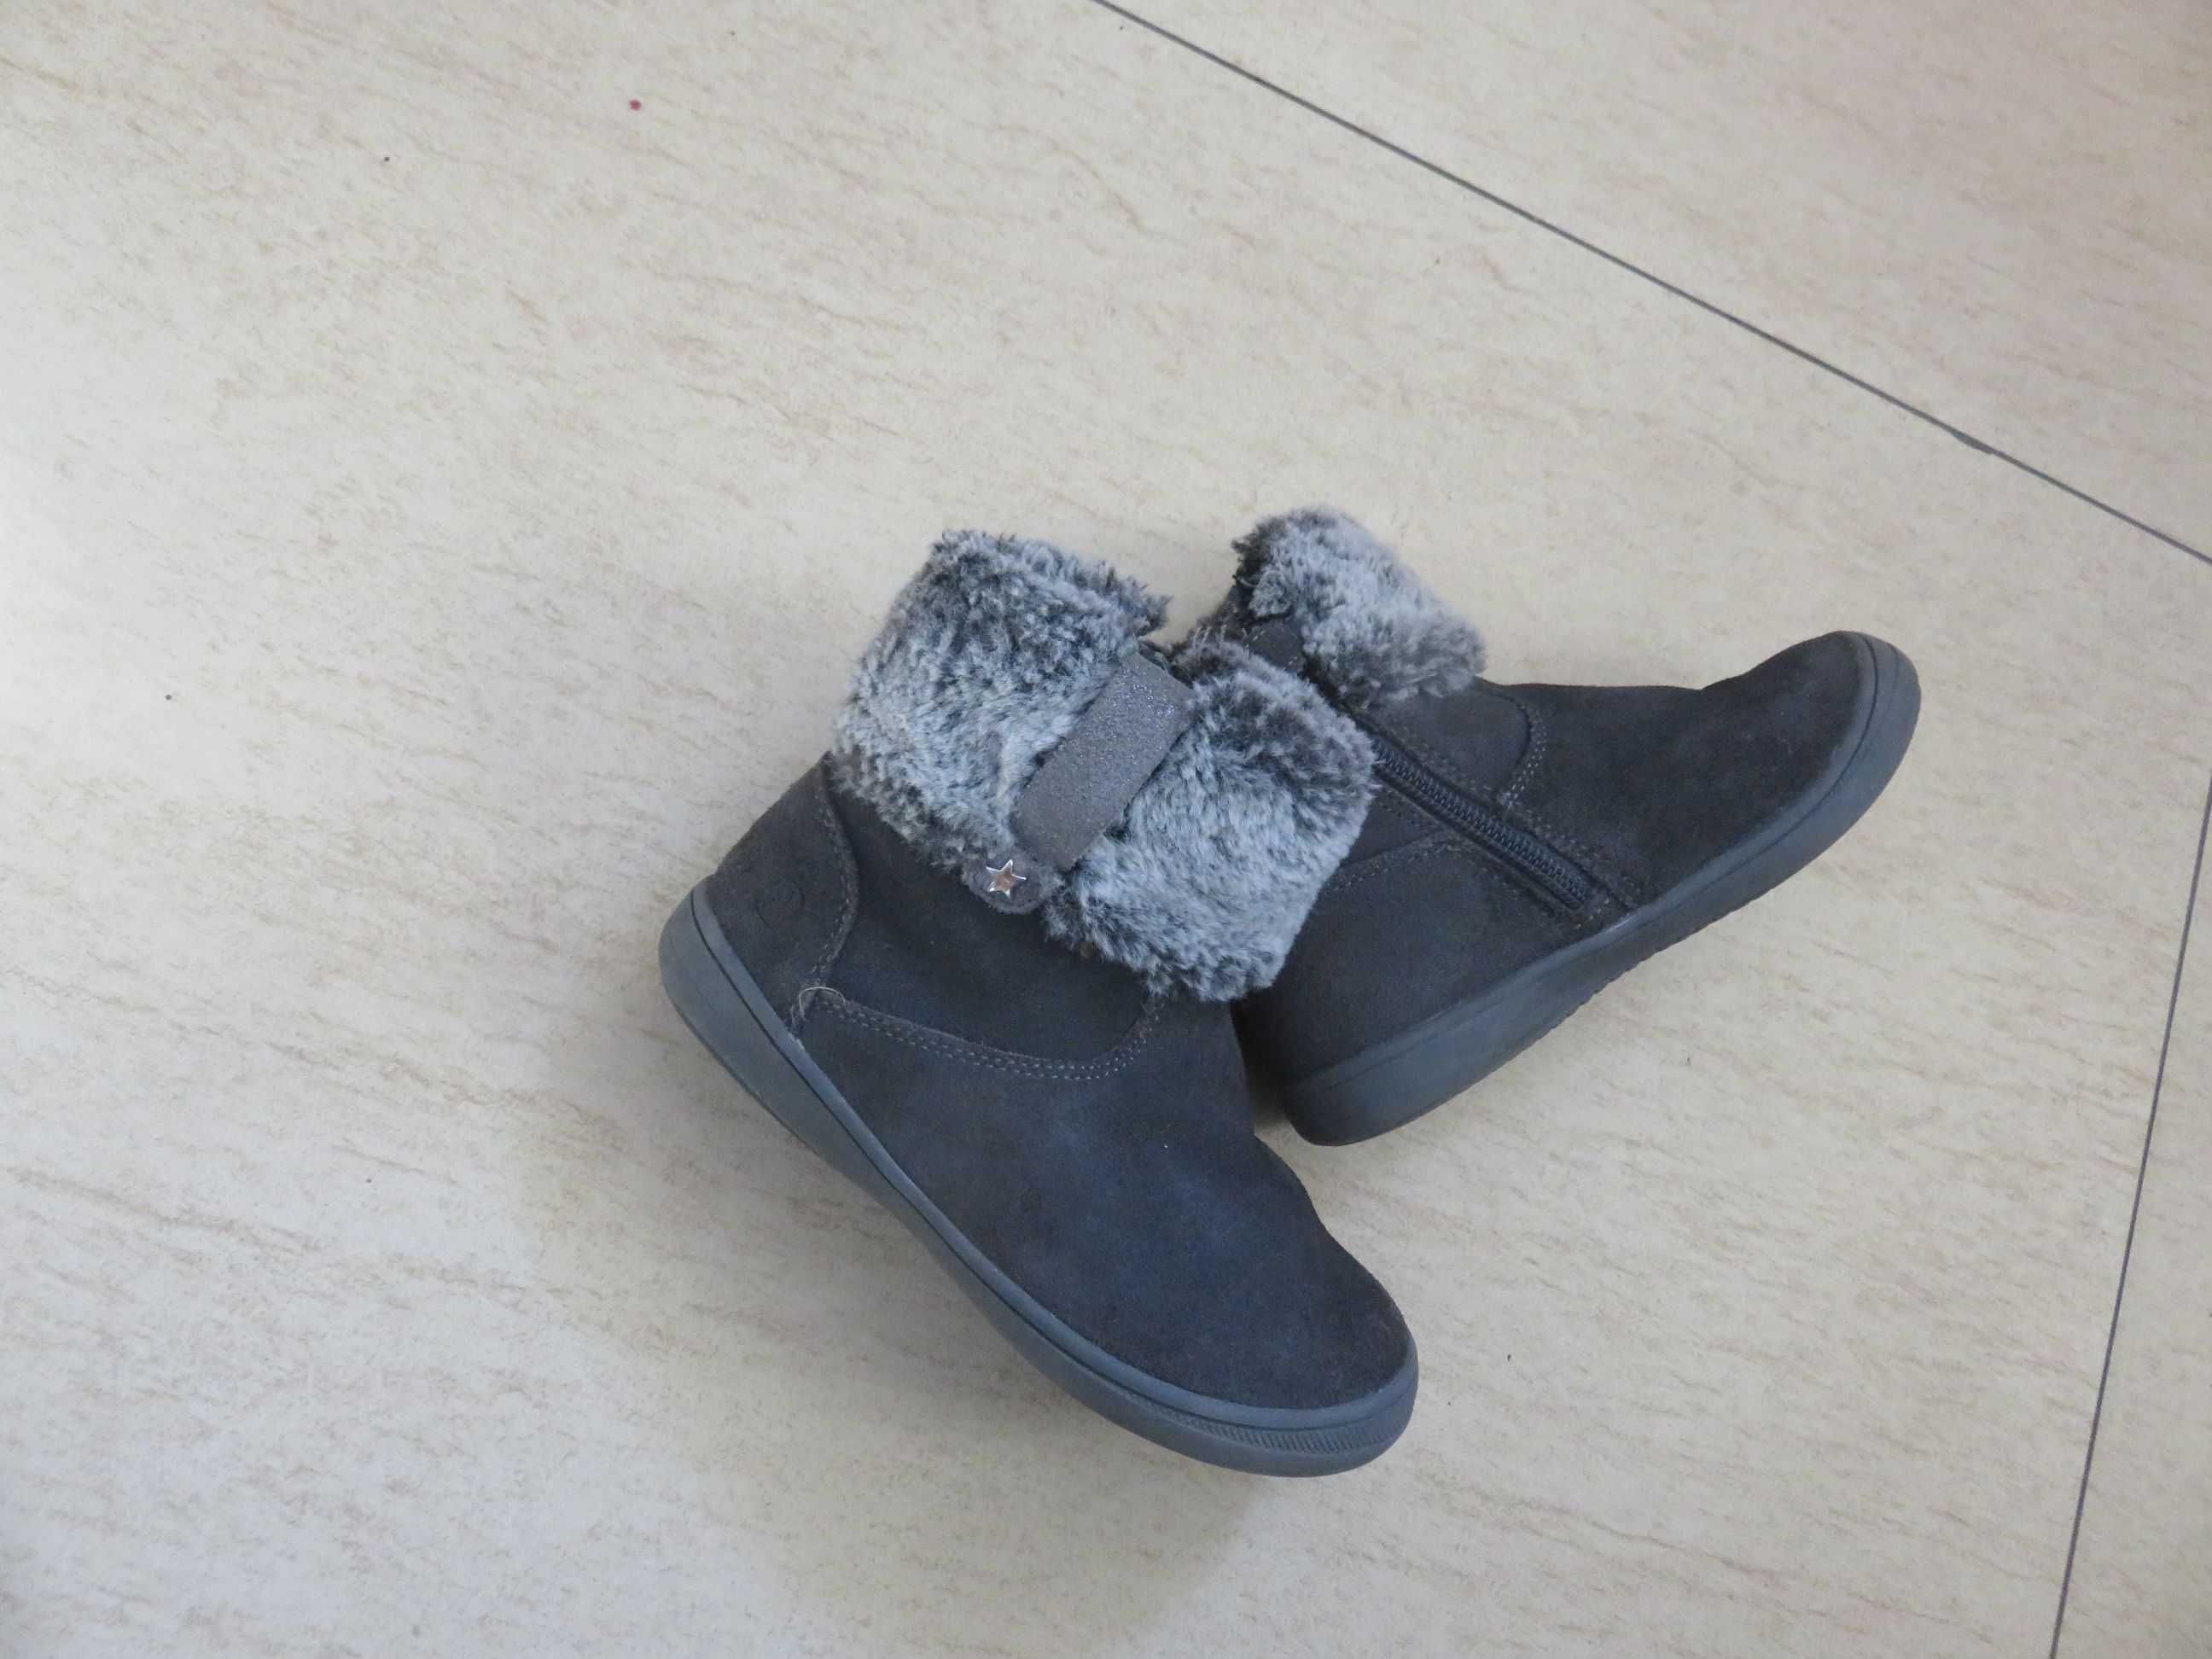 kozaki, botki, buty zimowe, śniegowce, r. 28, wkładka 17,5cm OKAIDI